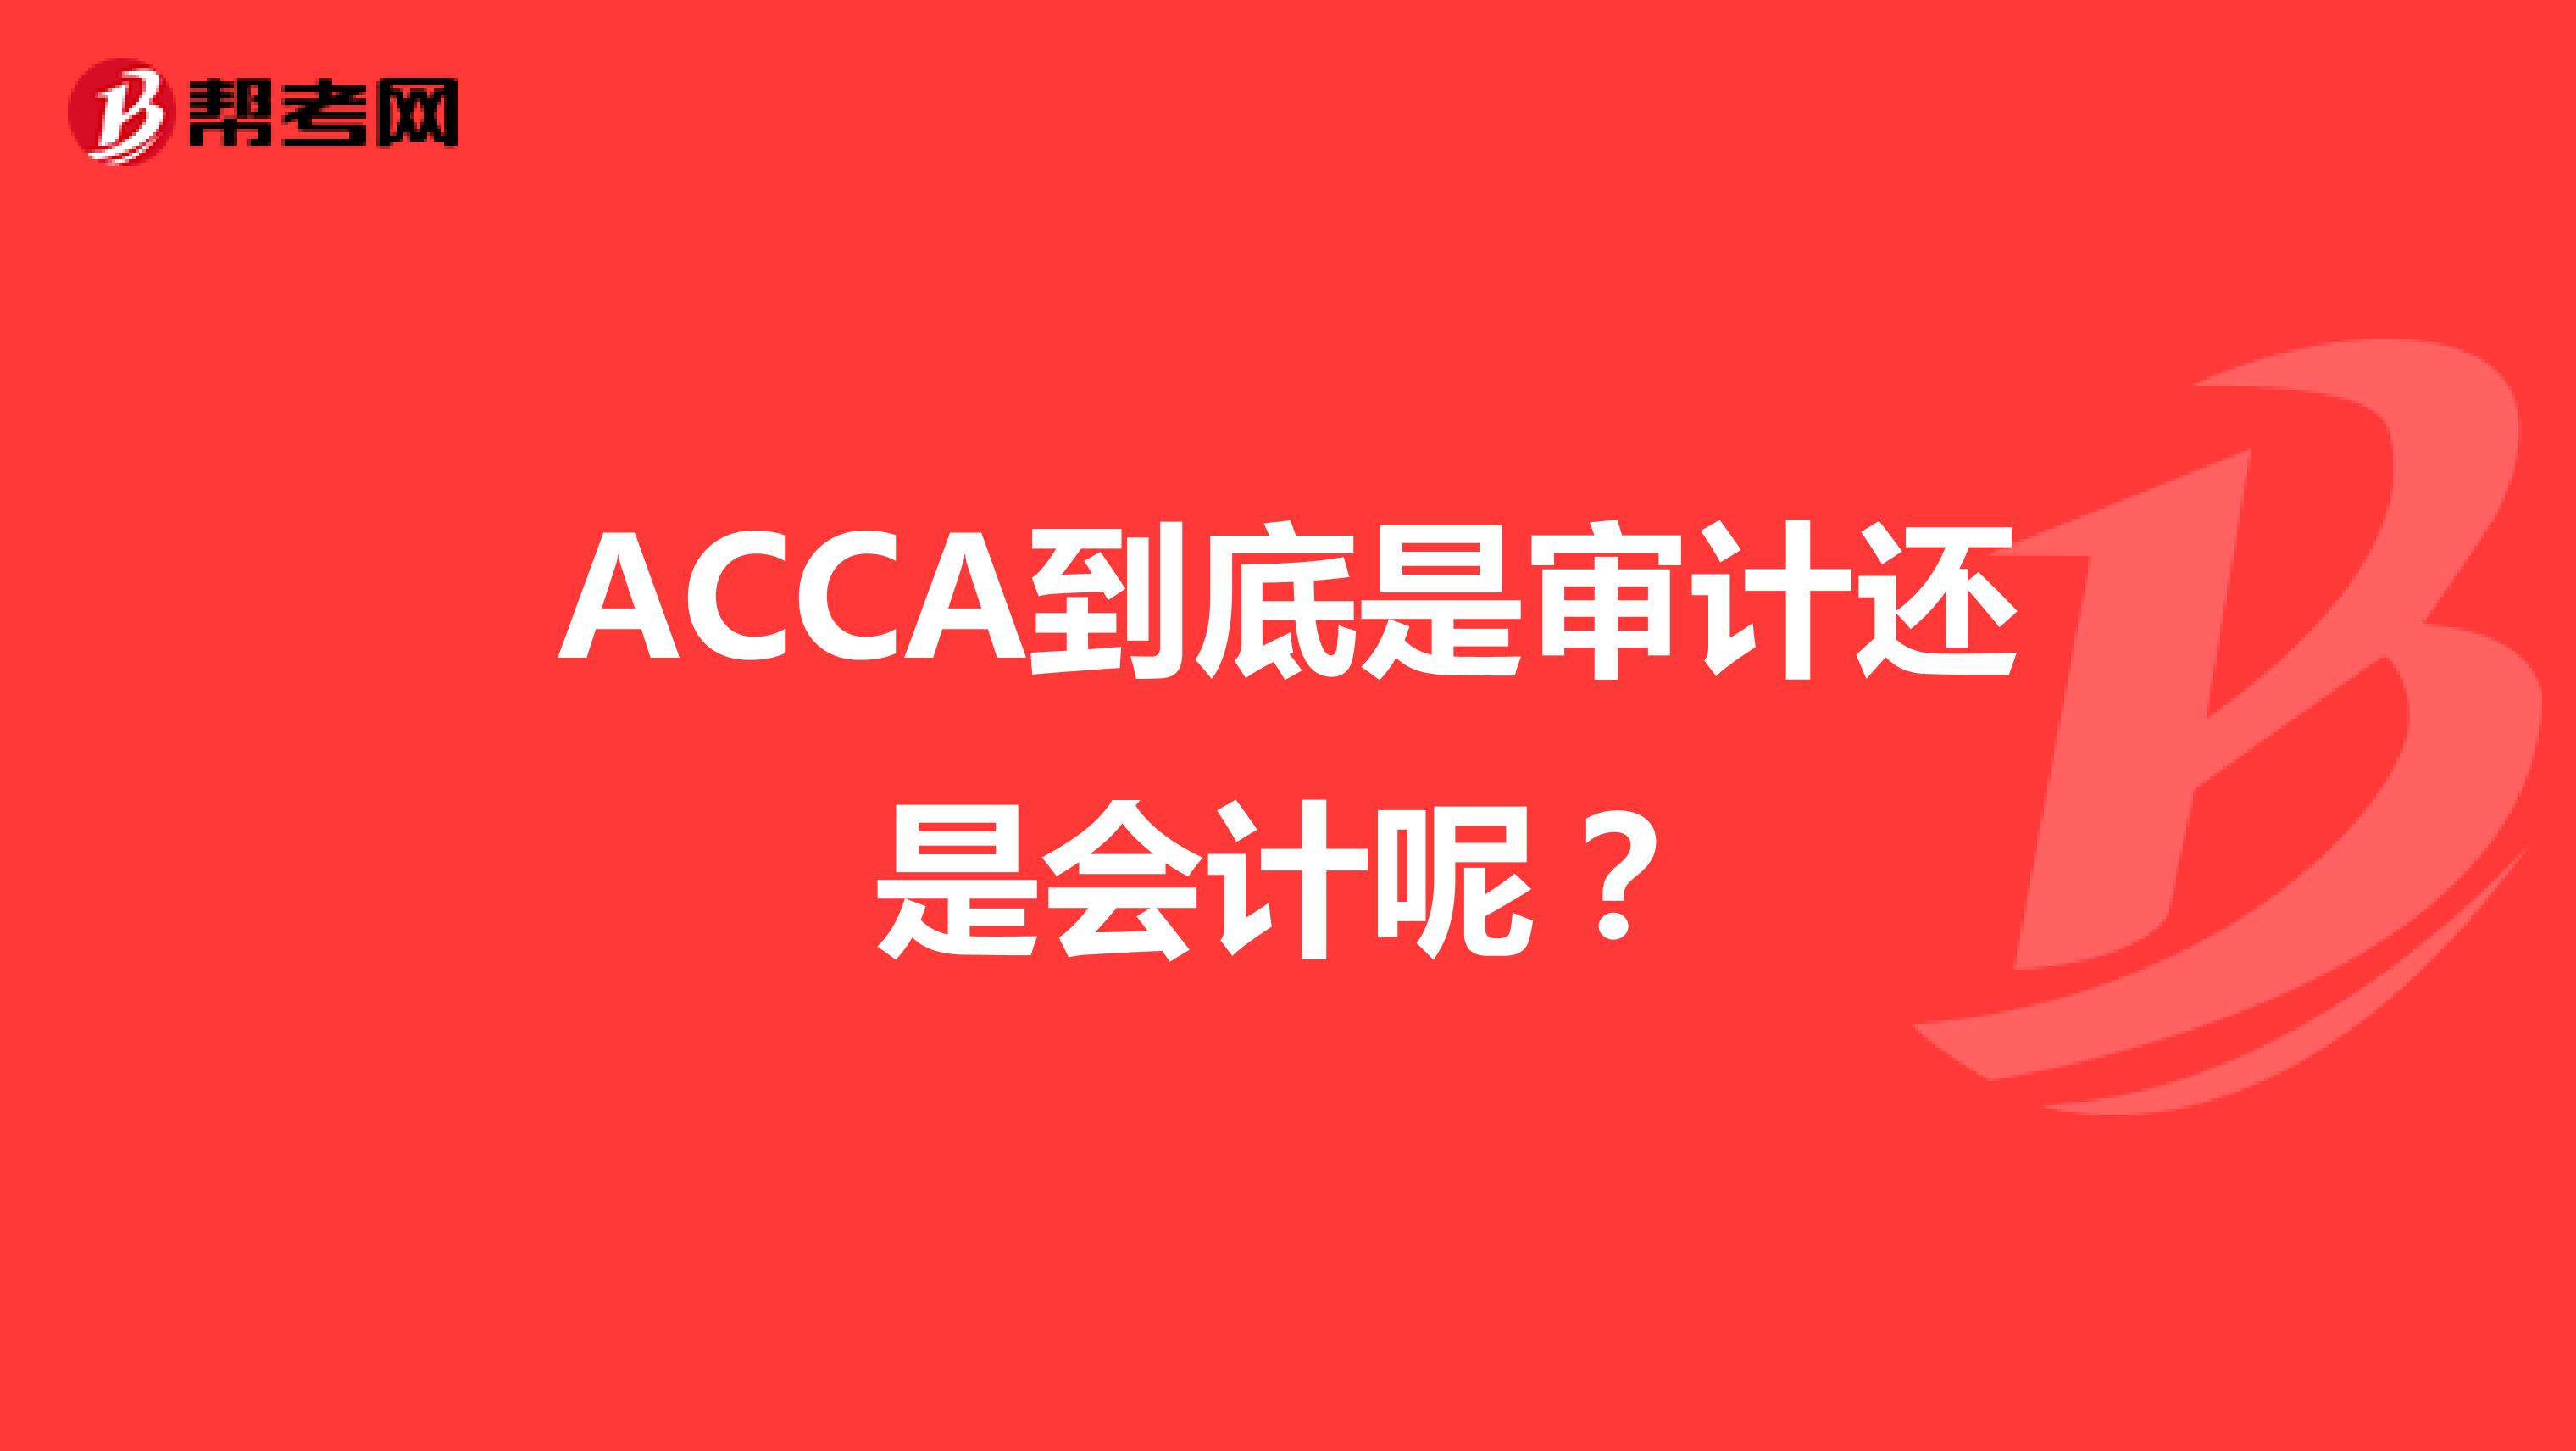 ACCA到底是审计还是会计呢？